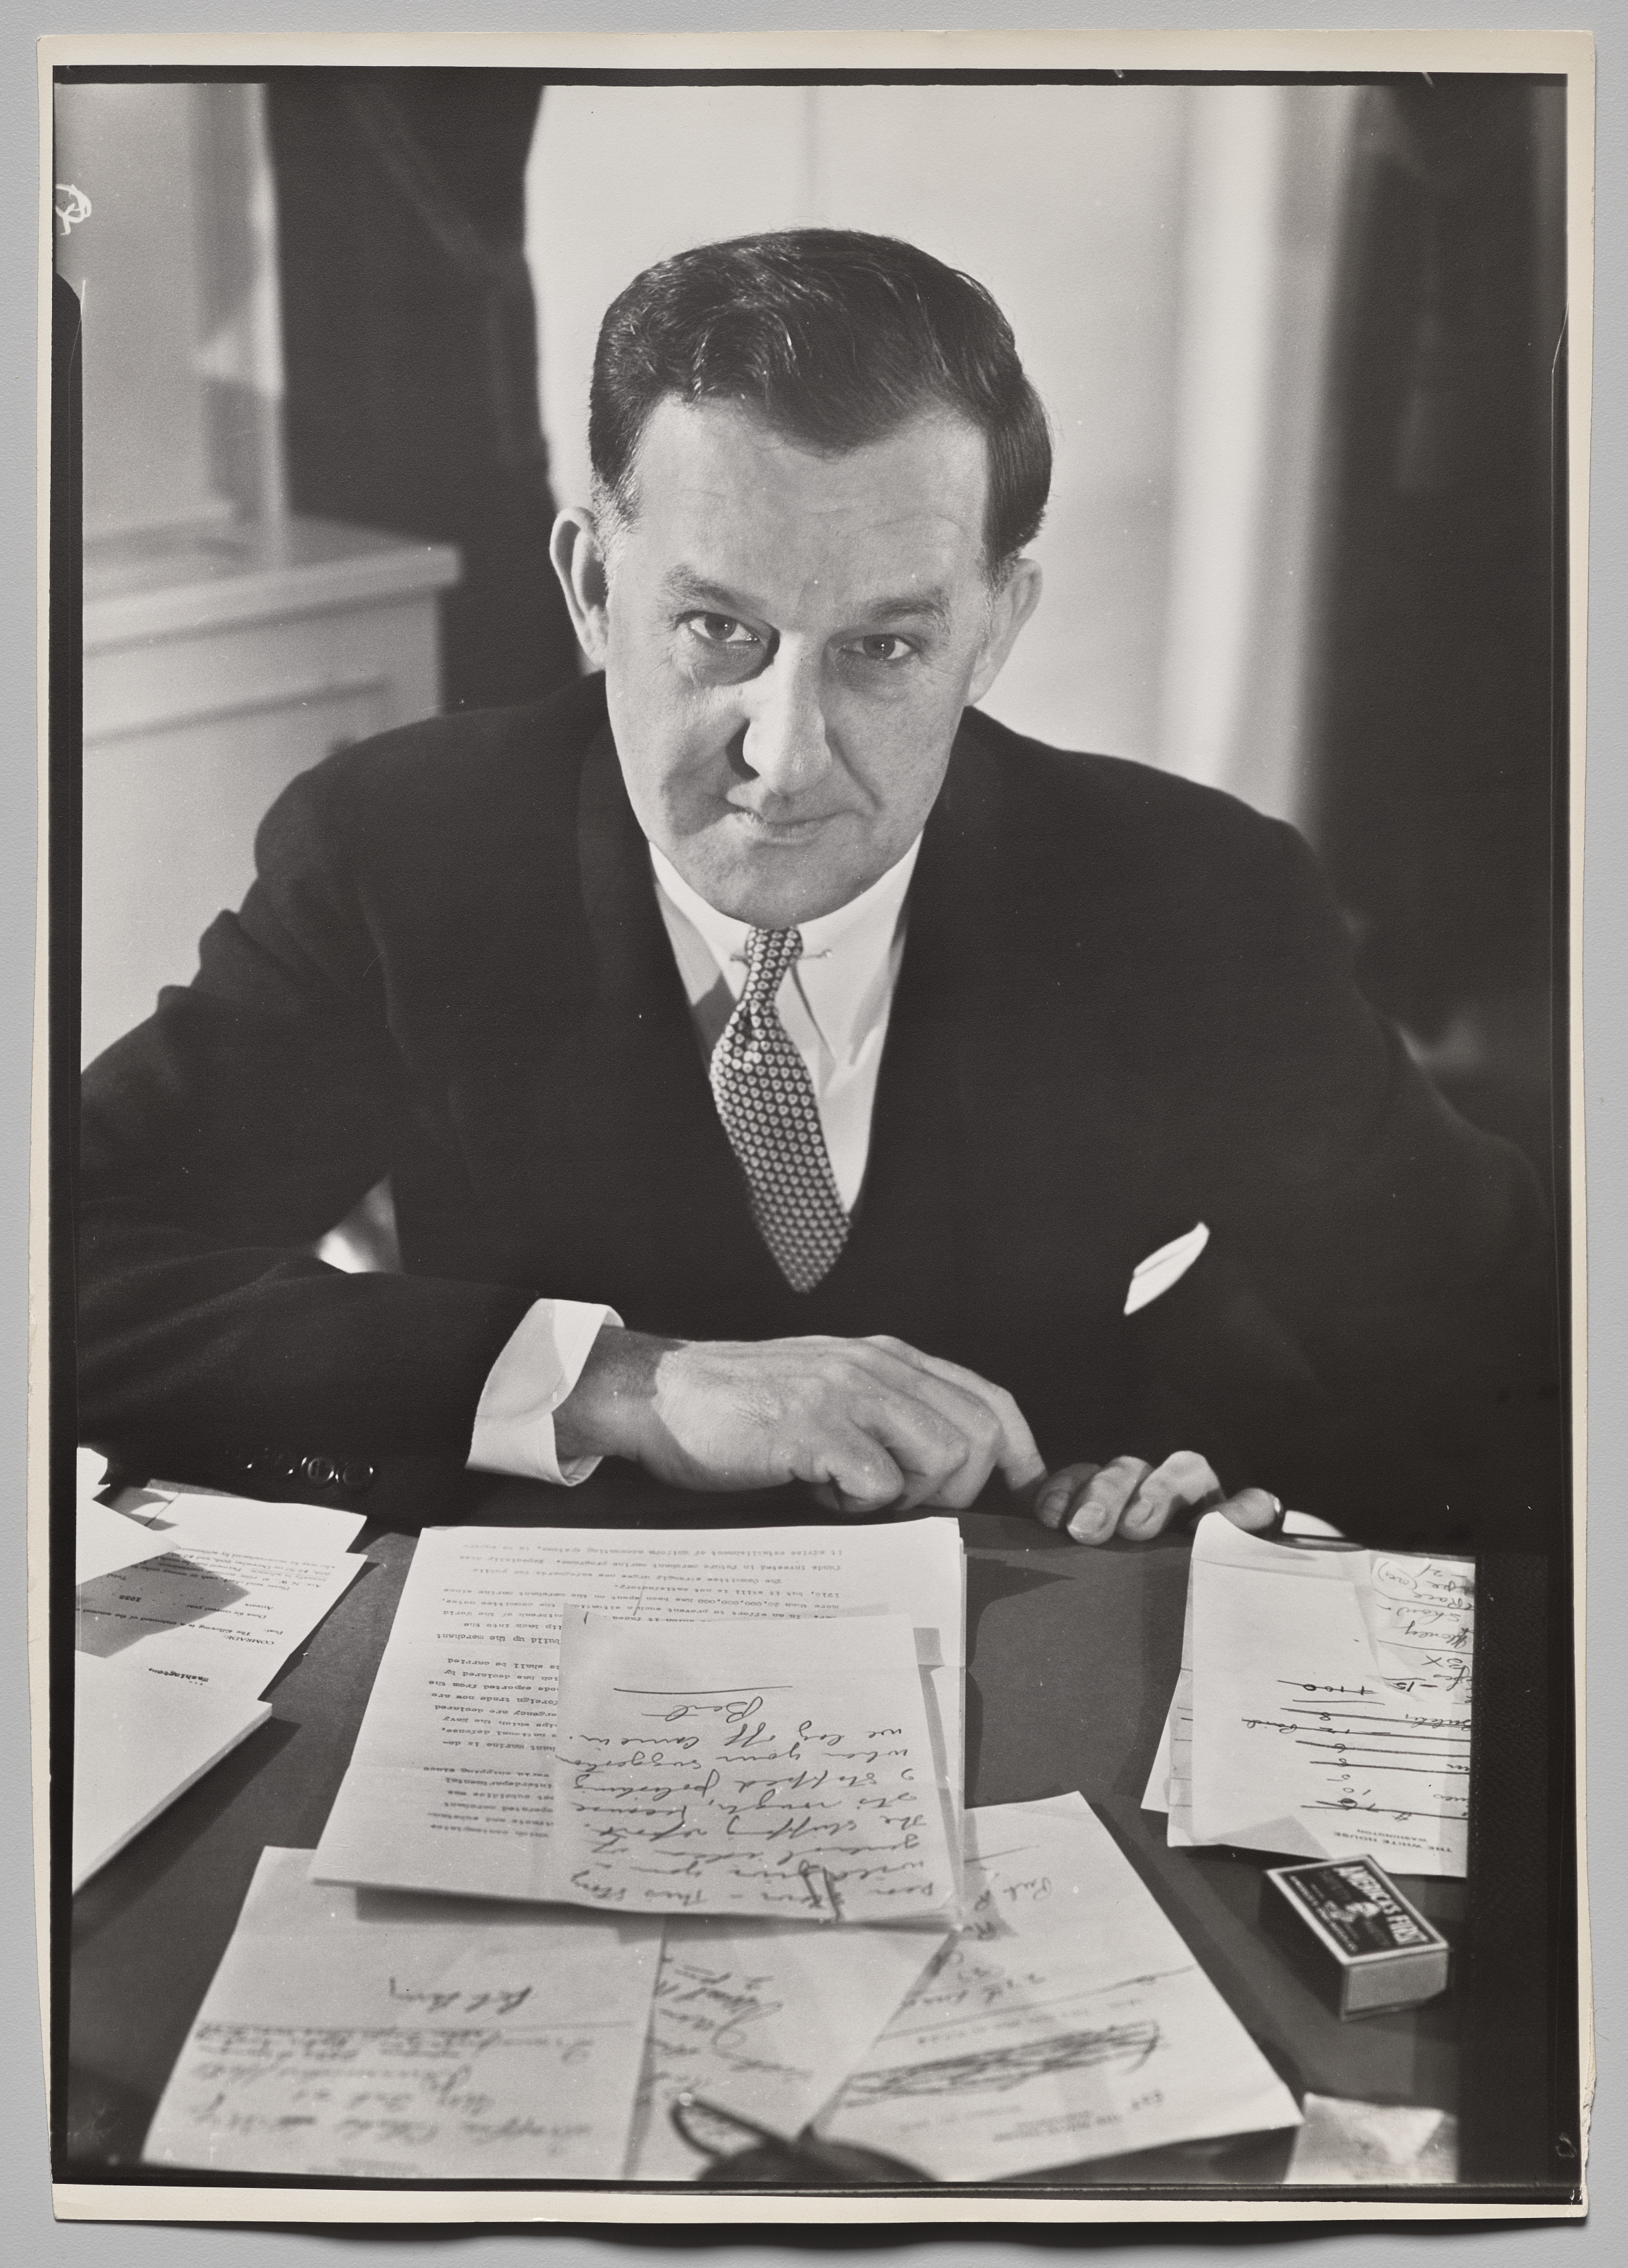 Stephen Early, Press Secretary for President Franklin Delano Roosevelt